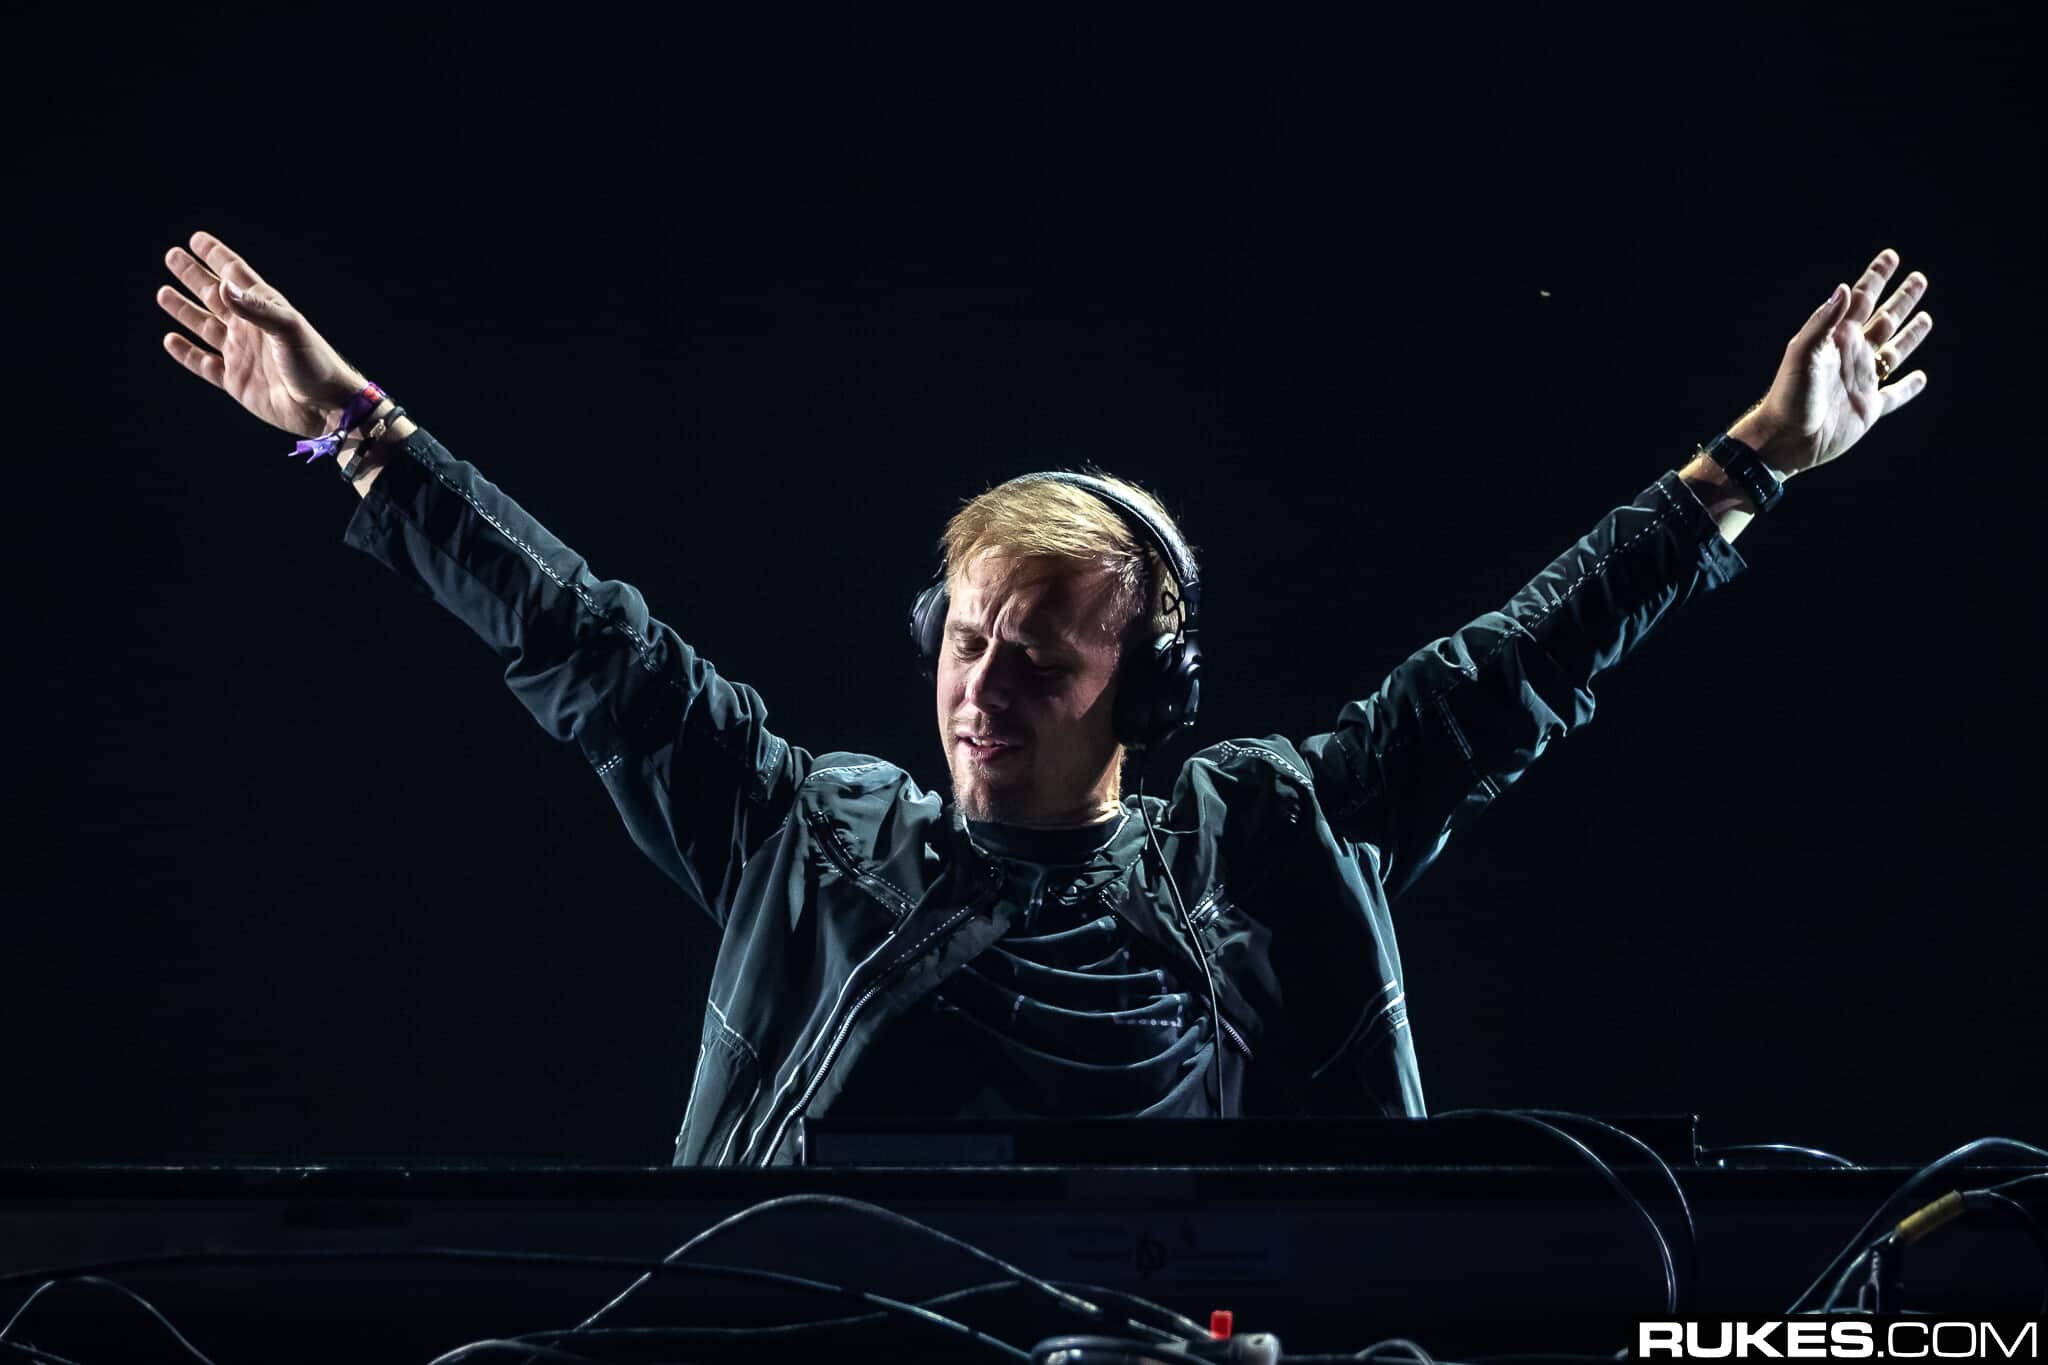 Armin van Buuren & Tom Staar return for second jam ‘Let Go’ feat Josha Daniel: Listen